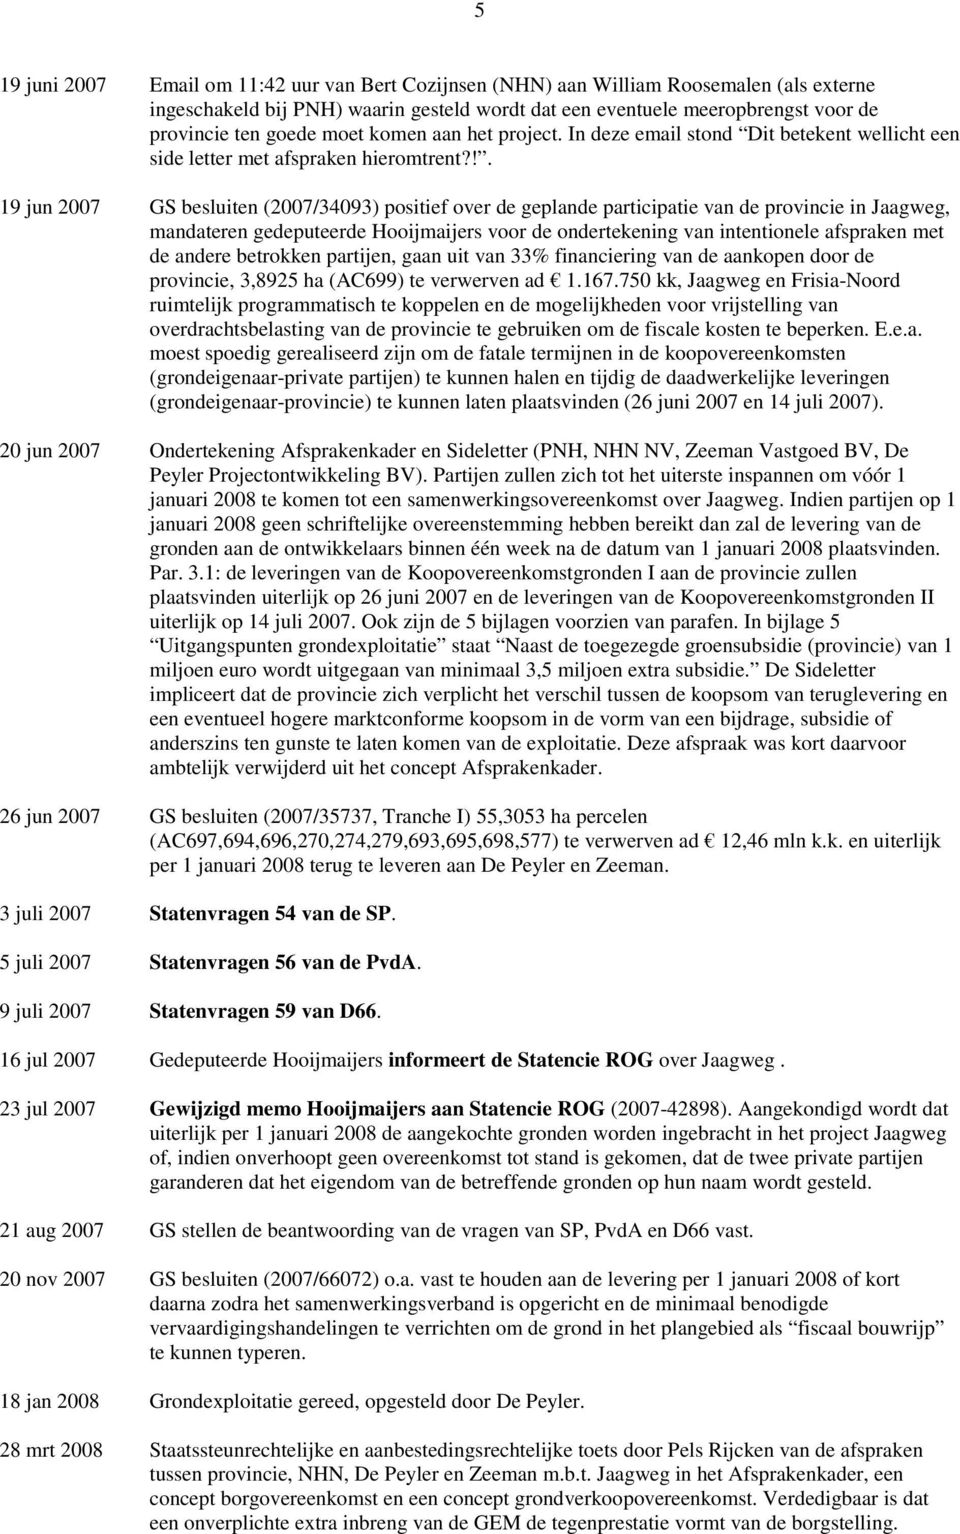 !. 19 jun 2007 GS besluiten (2007/34093) positief over de geplande participatie van de provincie in Jaagweg, mandateren gedeputeerde Hooijmaijers voor de ondertekening van intentionele afspraken met